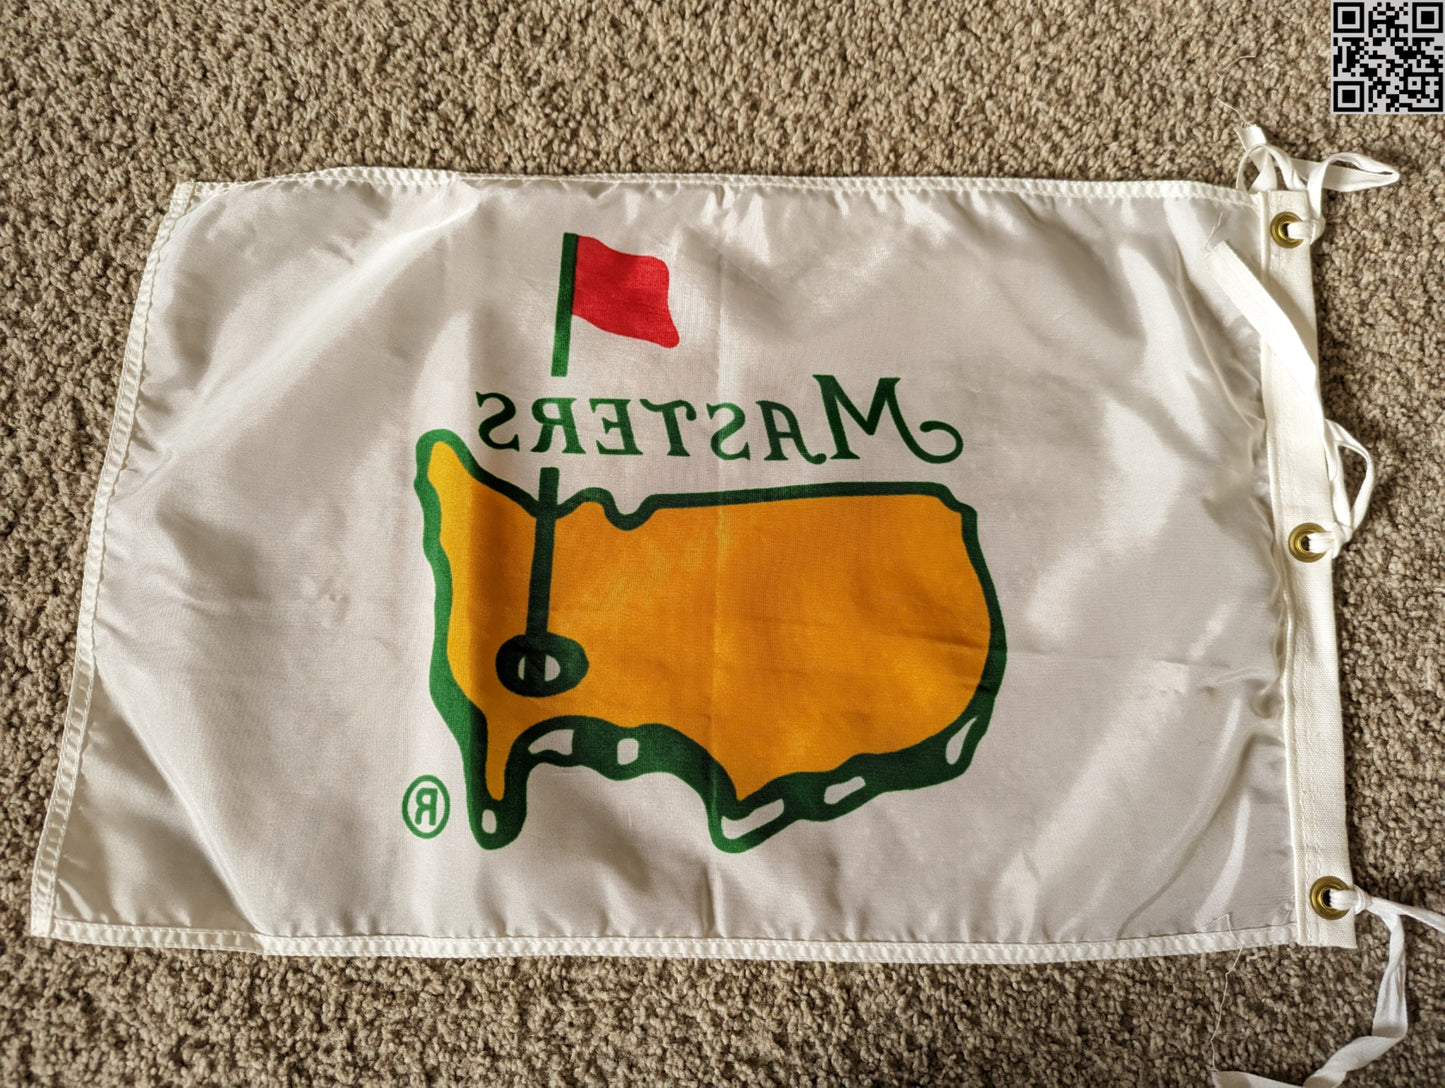 1993 1996 Masters Tournament White Silk Souvenir Pin Flag